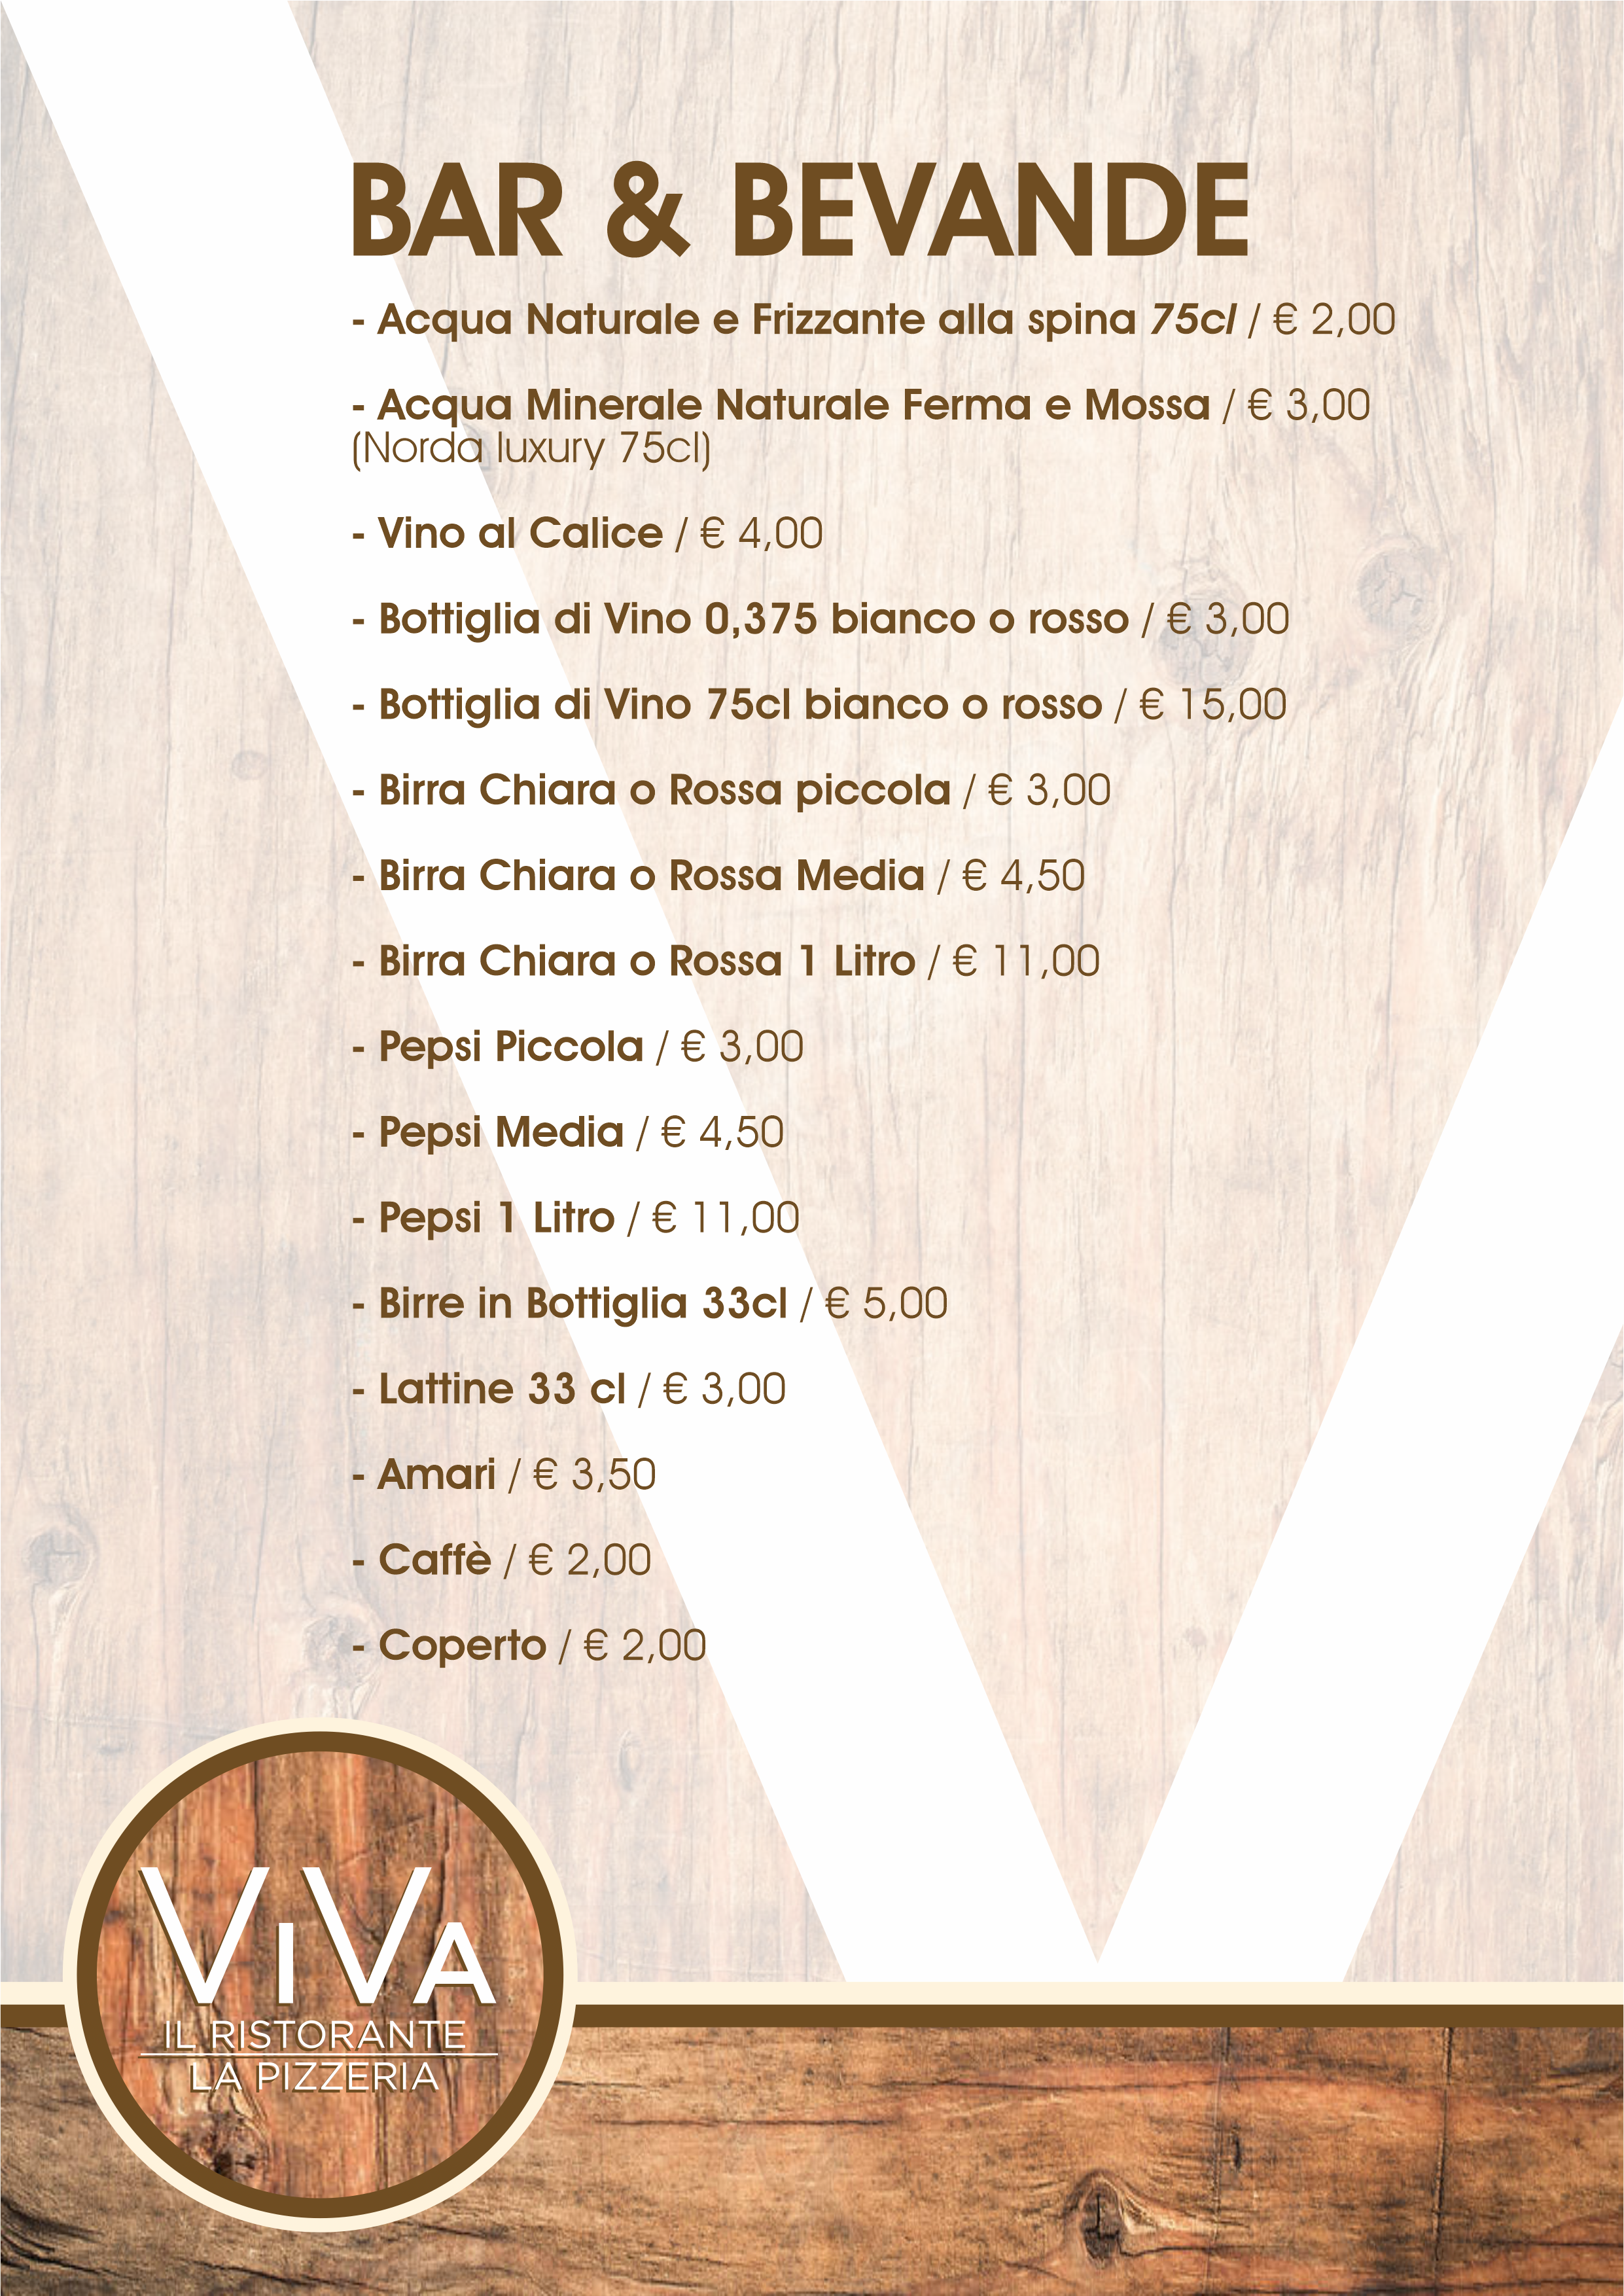 viva menu